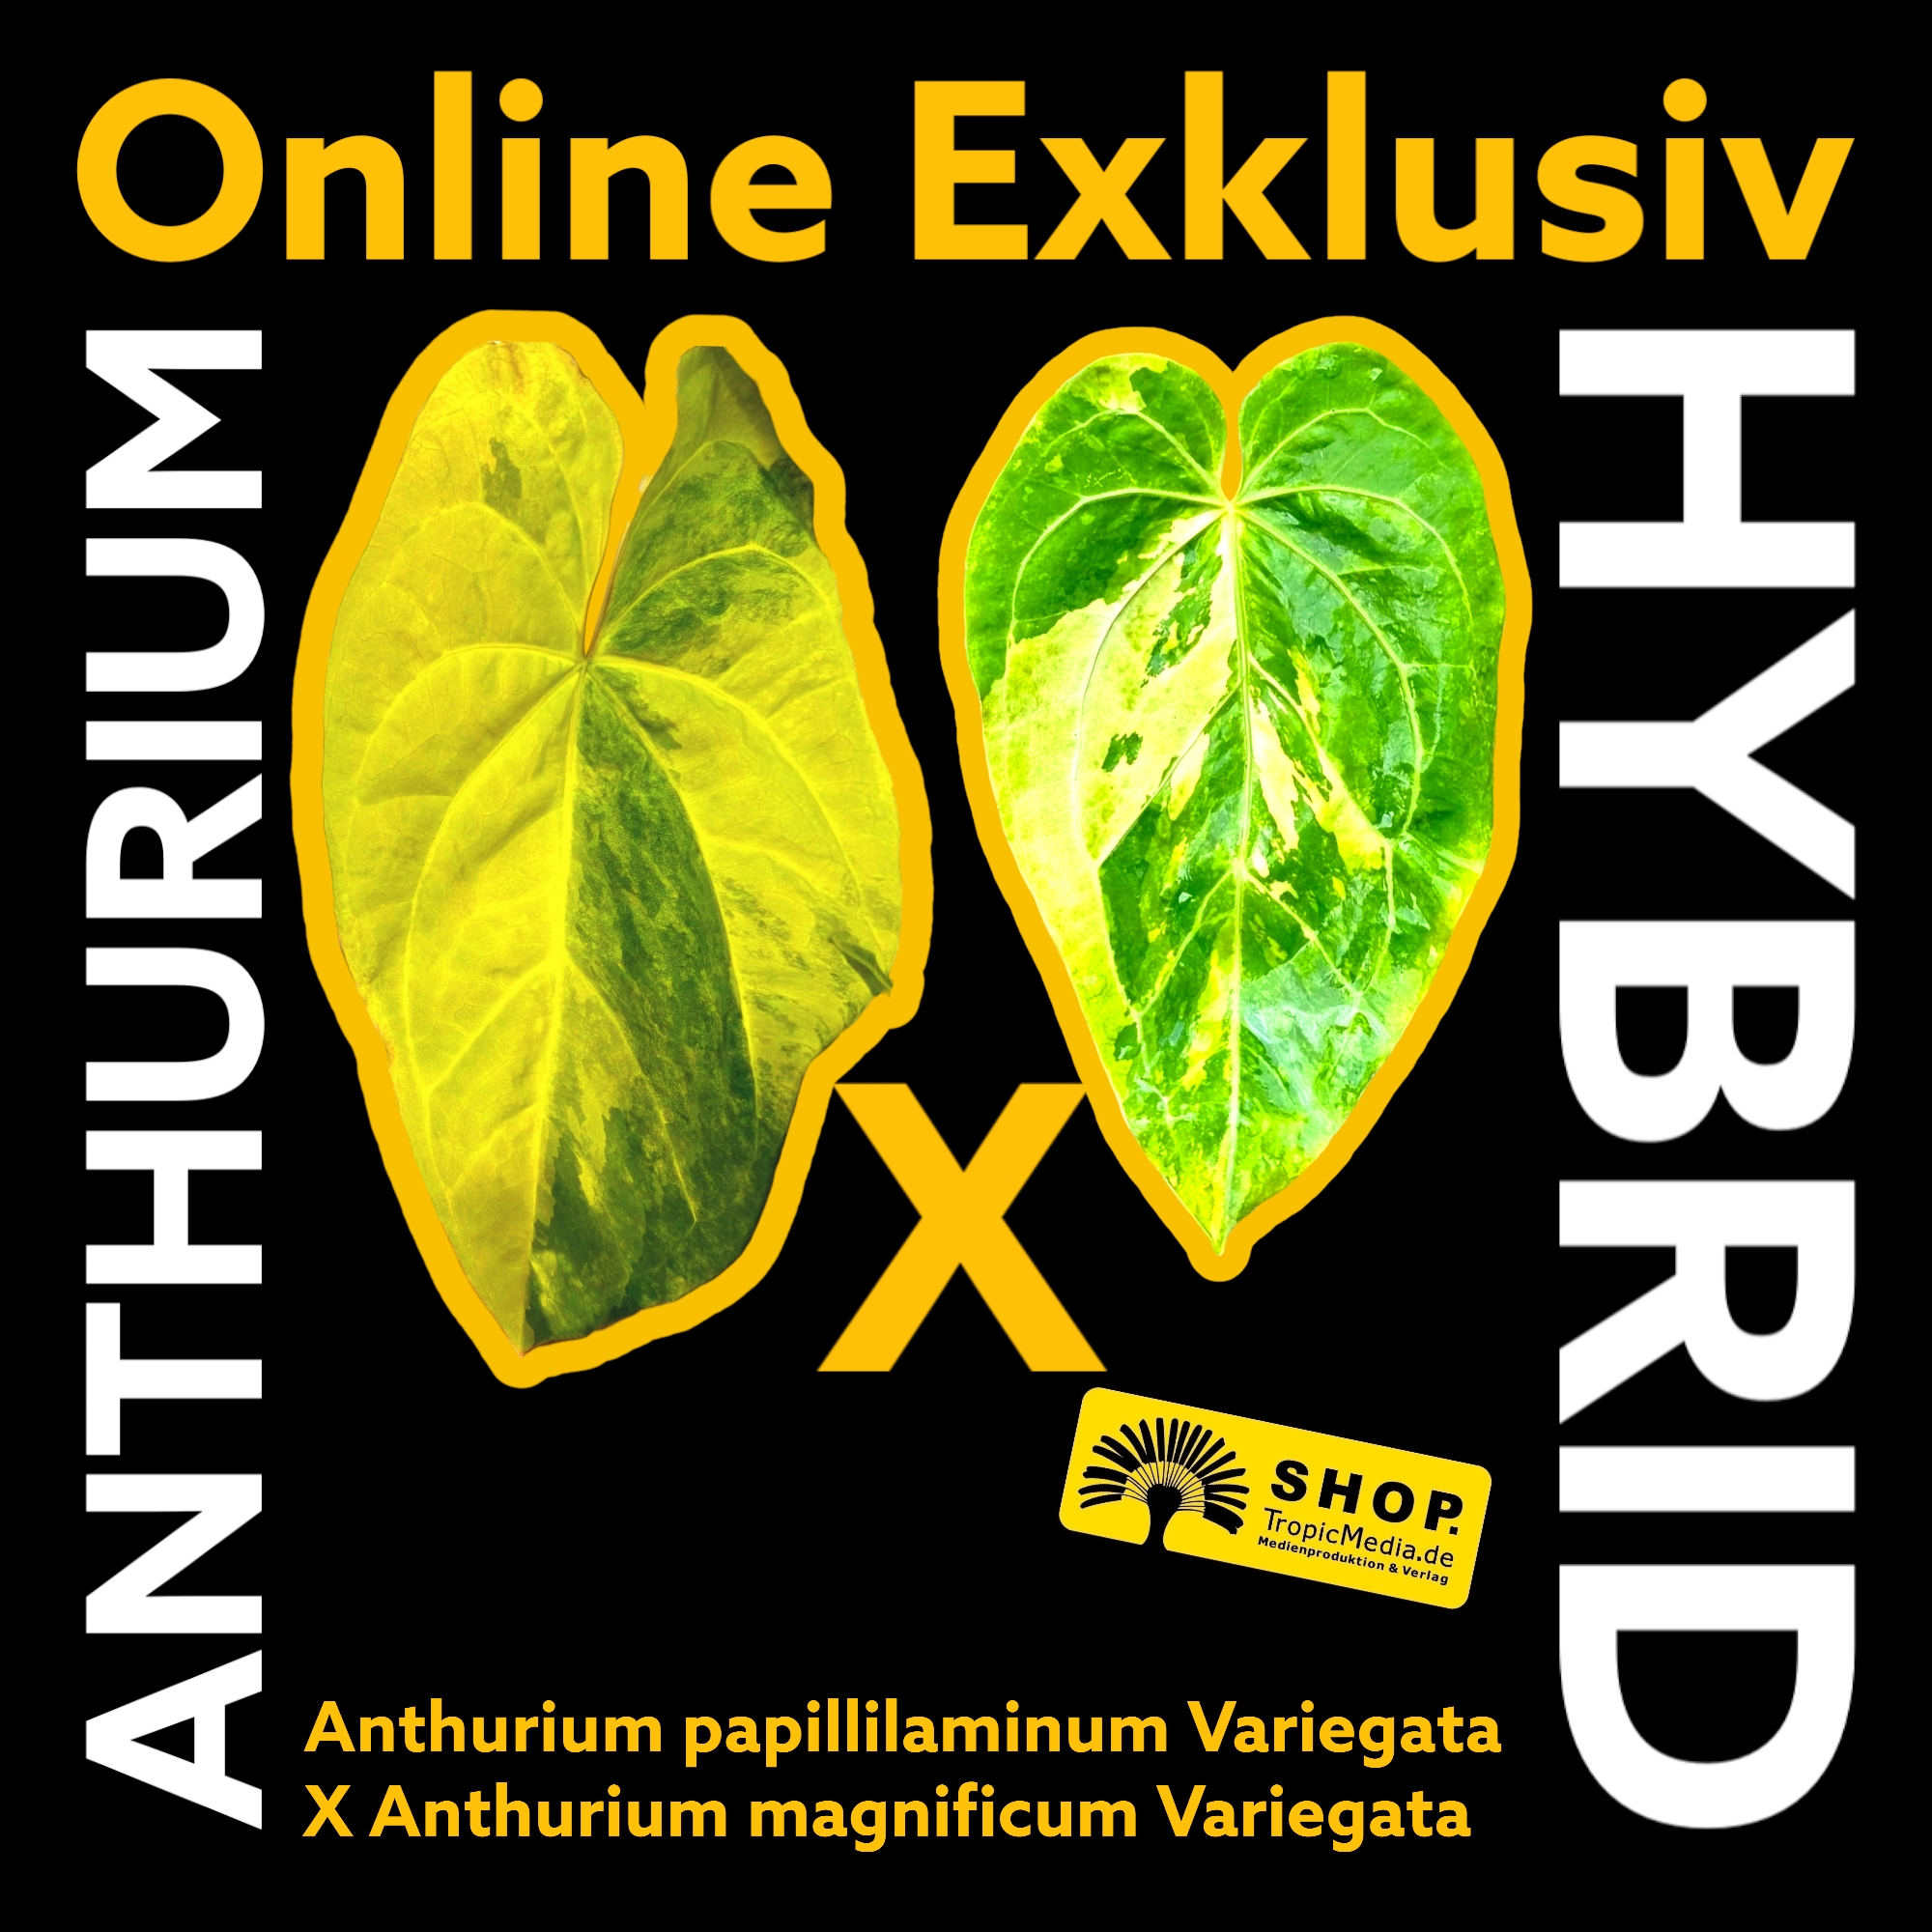 Anthurium papillilaminum Variegata X Anthurium magnificum Variegata EXQUISITE Kreuzung erstmals in Europa